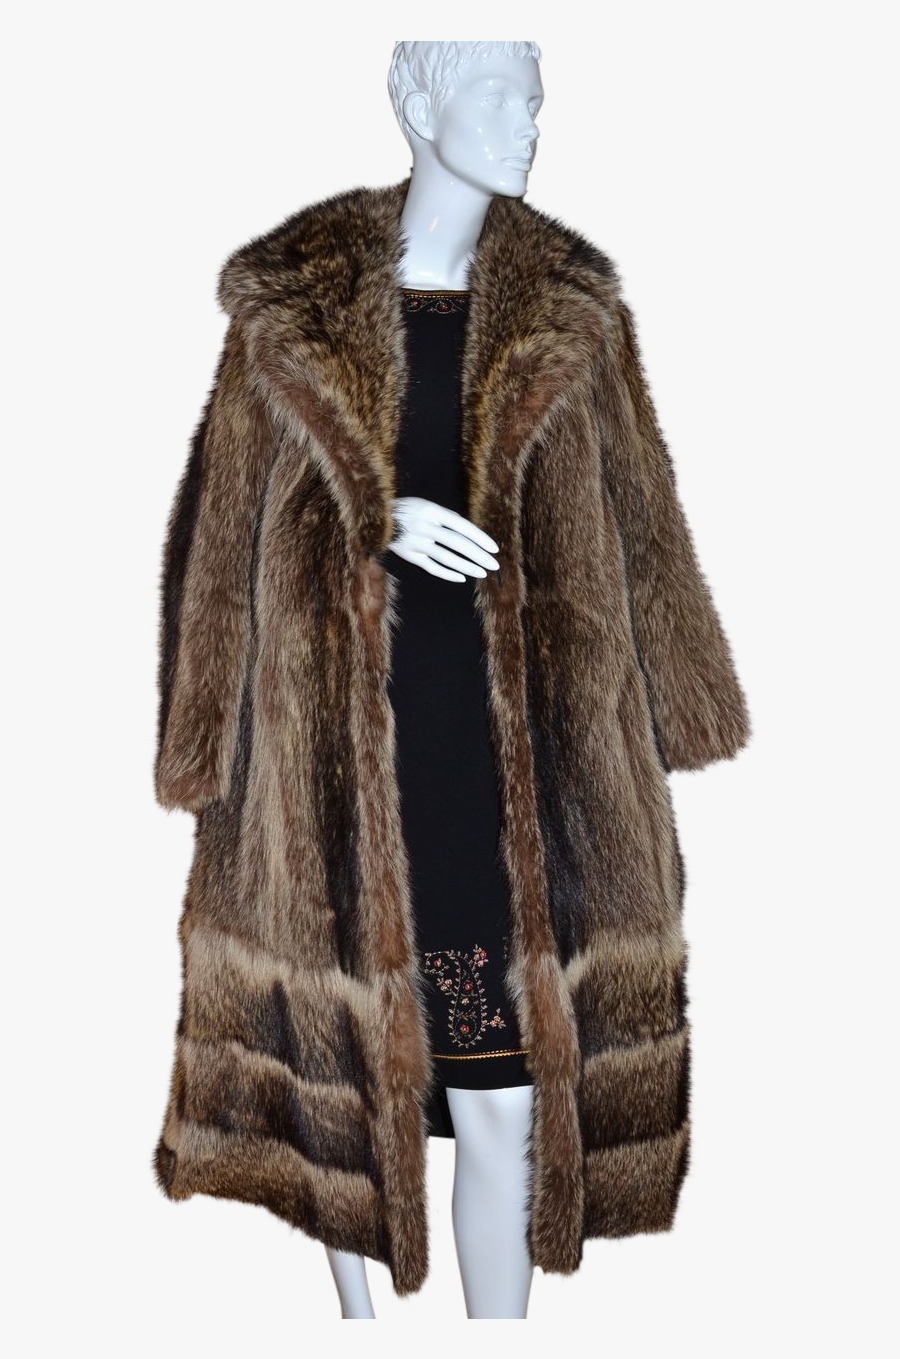 Fur Coat Png Hd - Fur Coat Transparent Png, Transparent Clipart